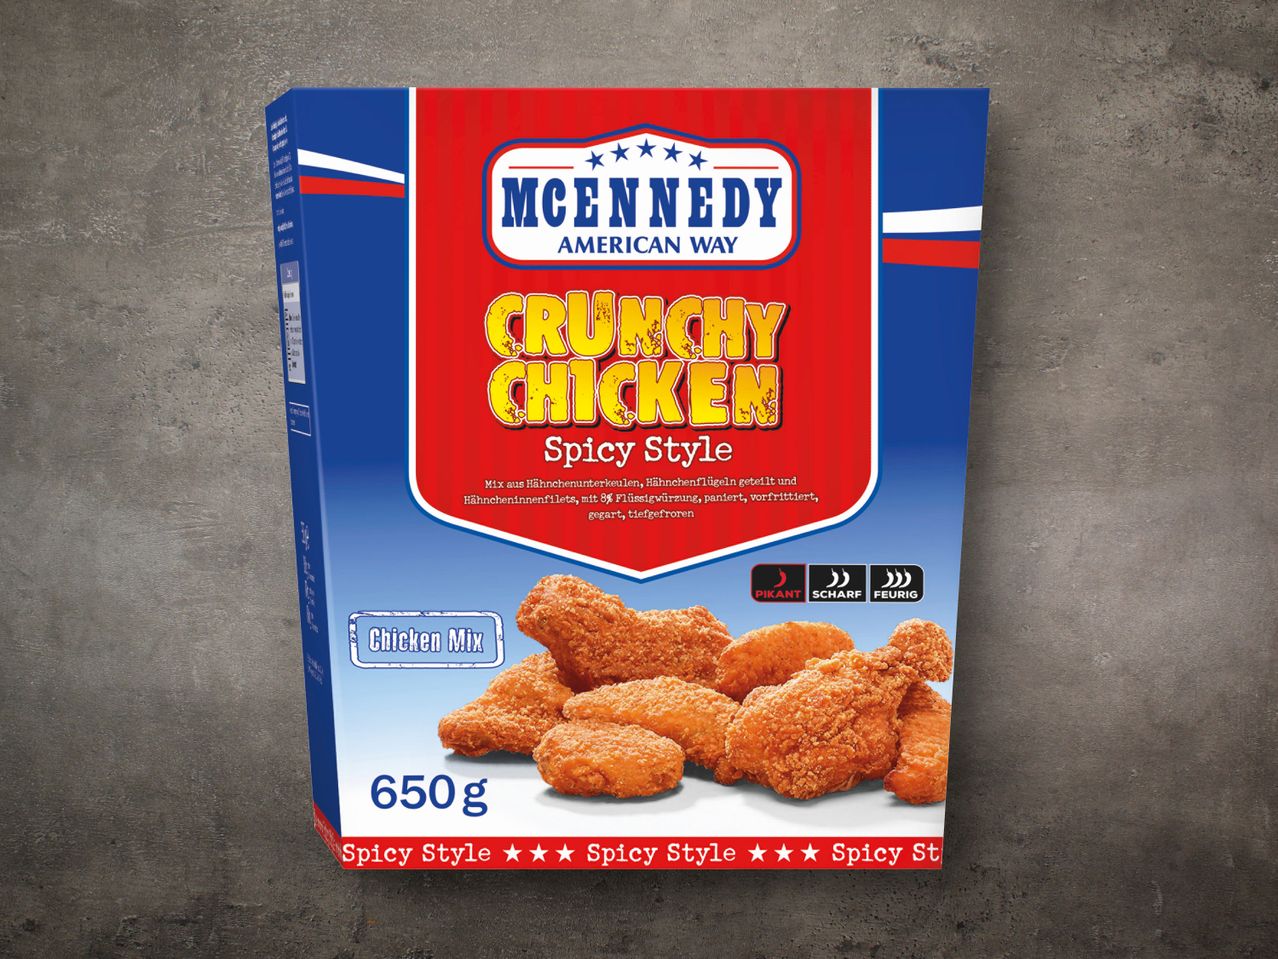 Chicken Crunchy McEnnedy Bucket